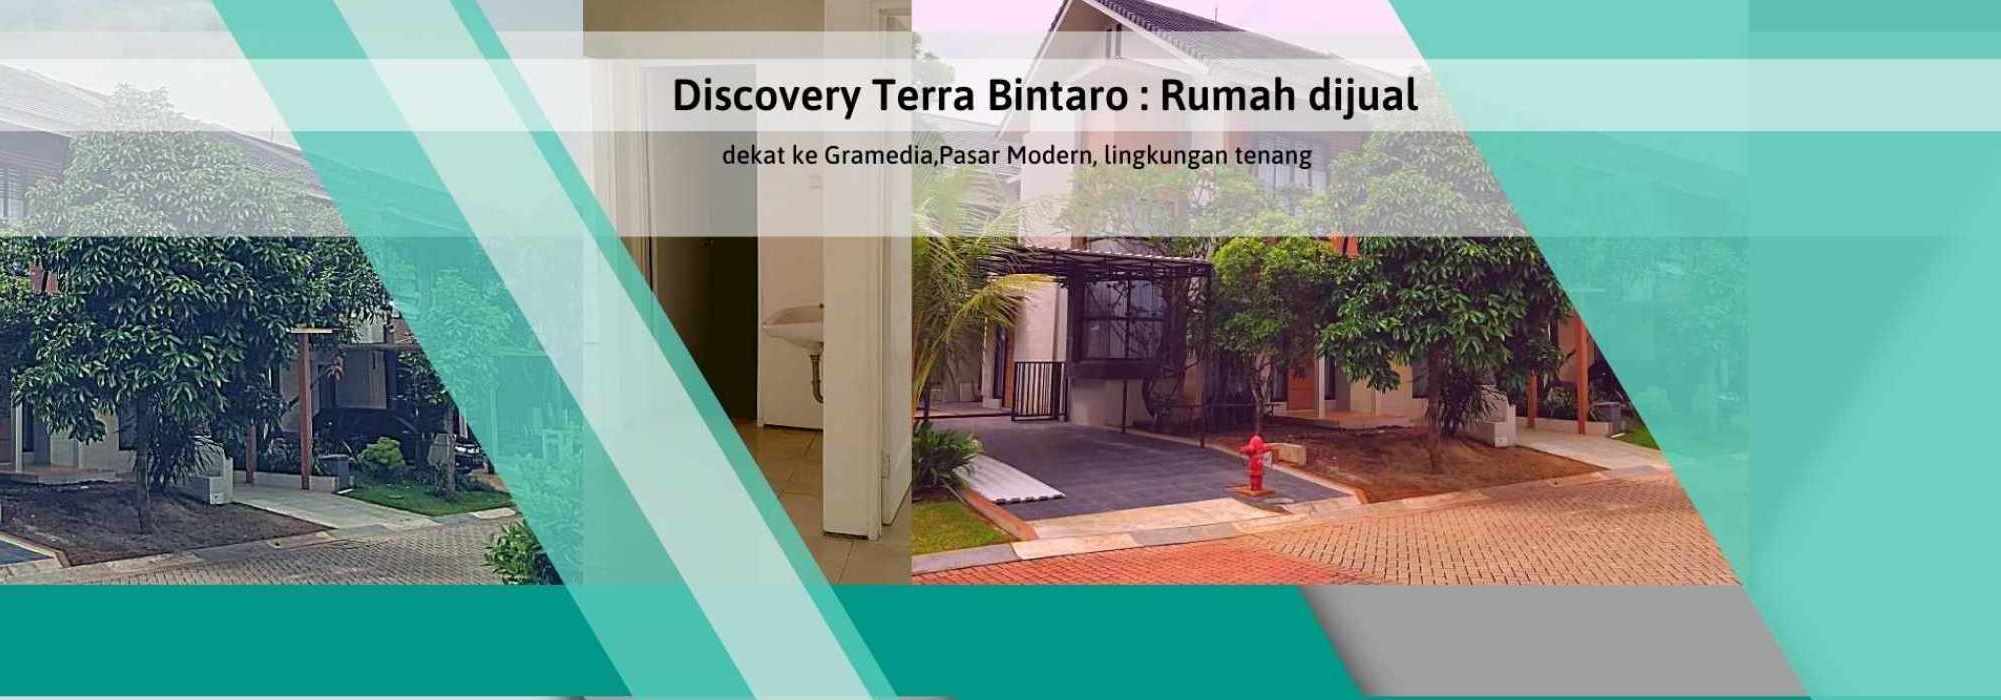 Discovery Terra Bintaro_Nimas_smaller_2000x700_v1